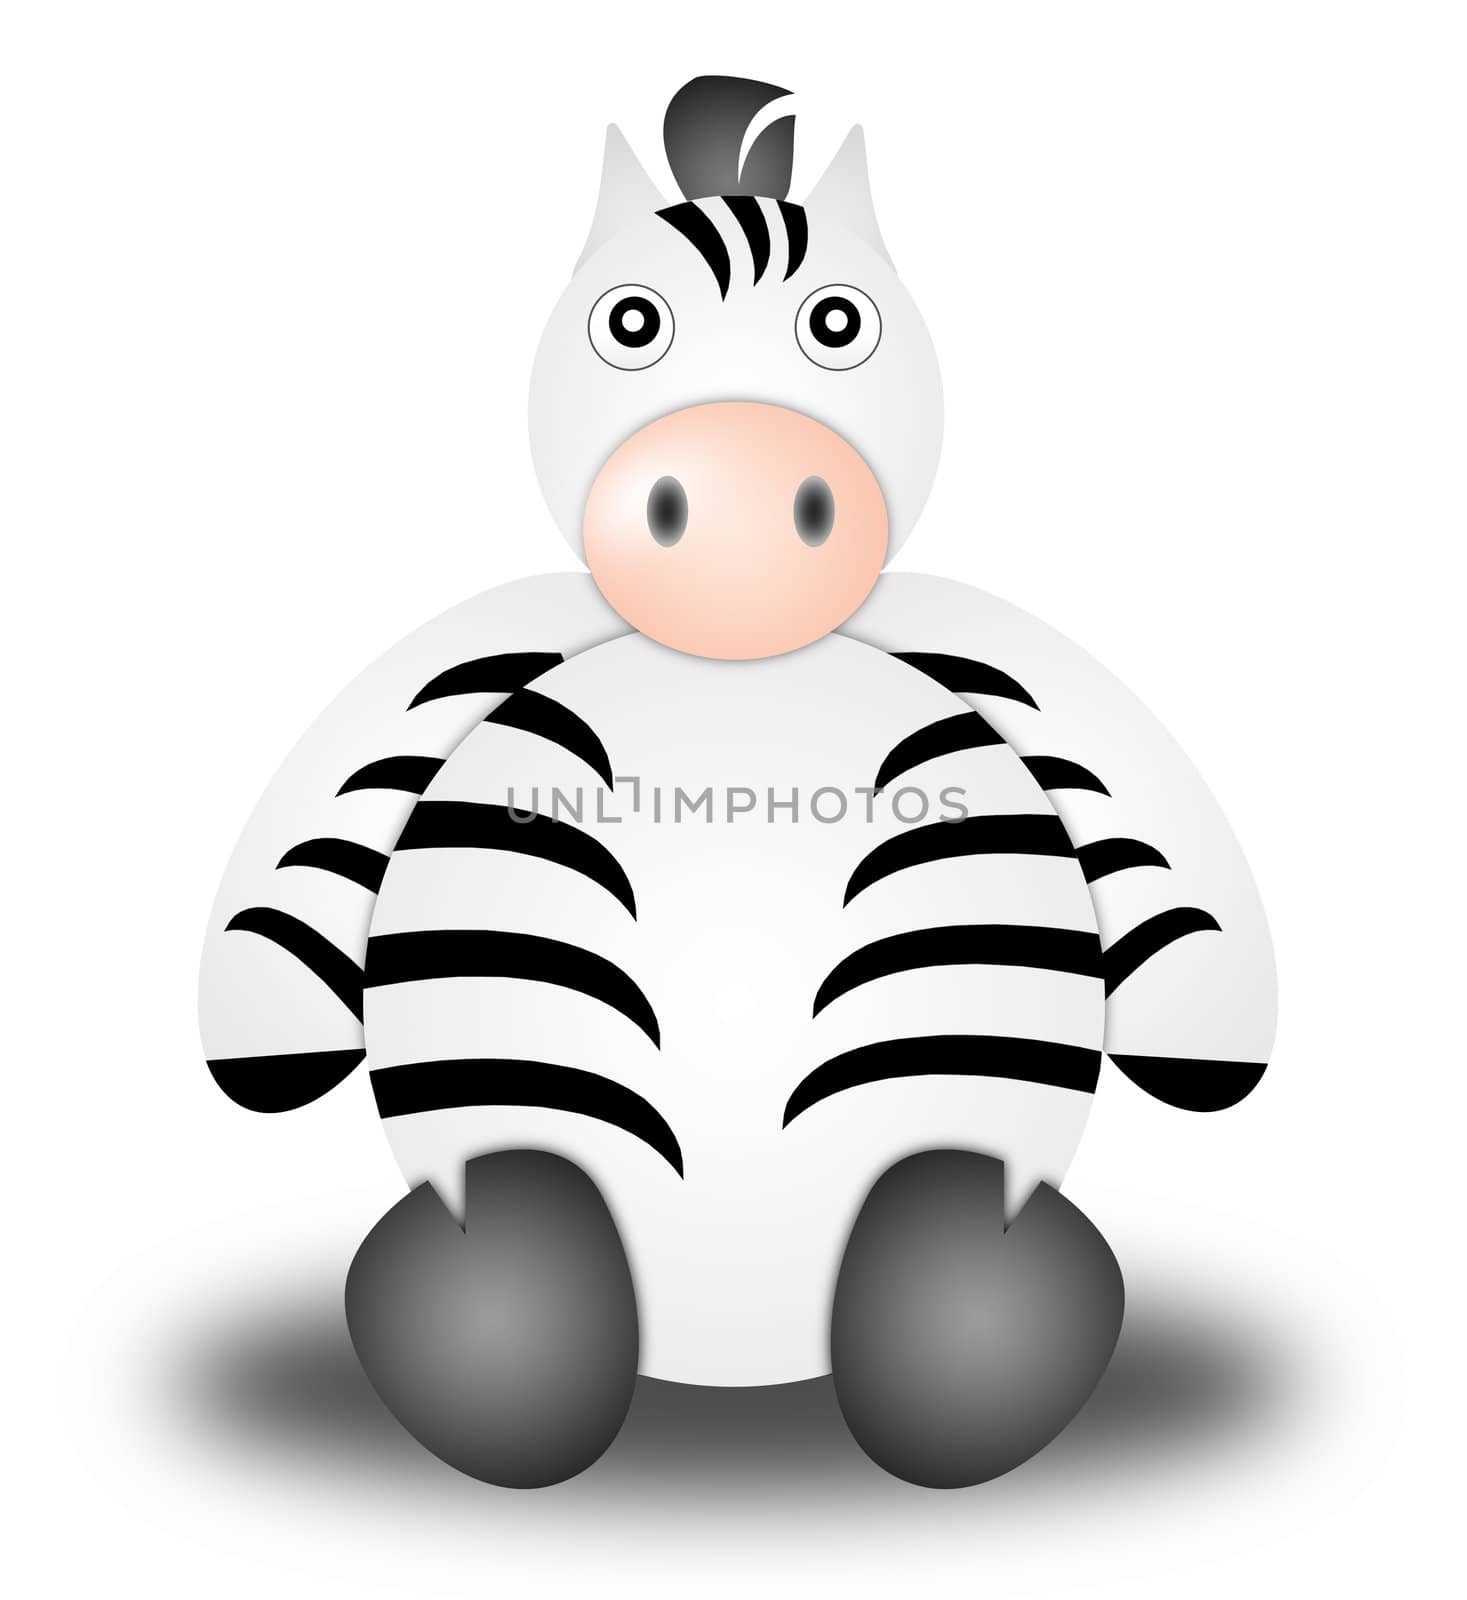 zebra. Illustration cartoon style. white background
